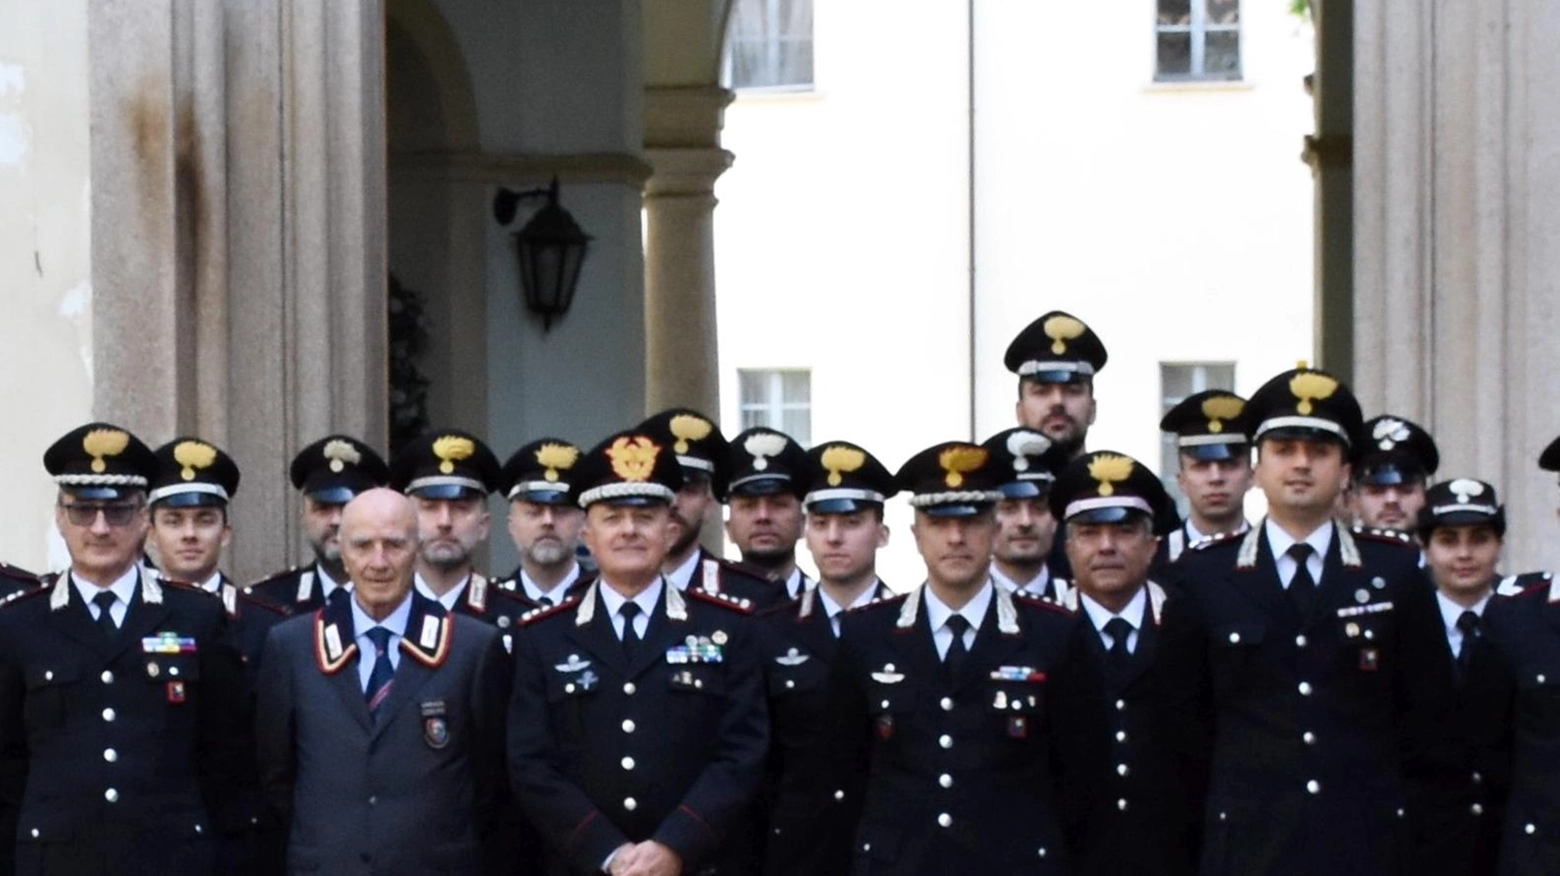 Il generale Micale saluta Pavia in vista del congedo dopo 50 anni di servizio, elogiando i valori dei carabinieri e ricordando il luogotenente Dall'Armi.